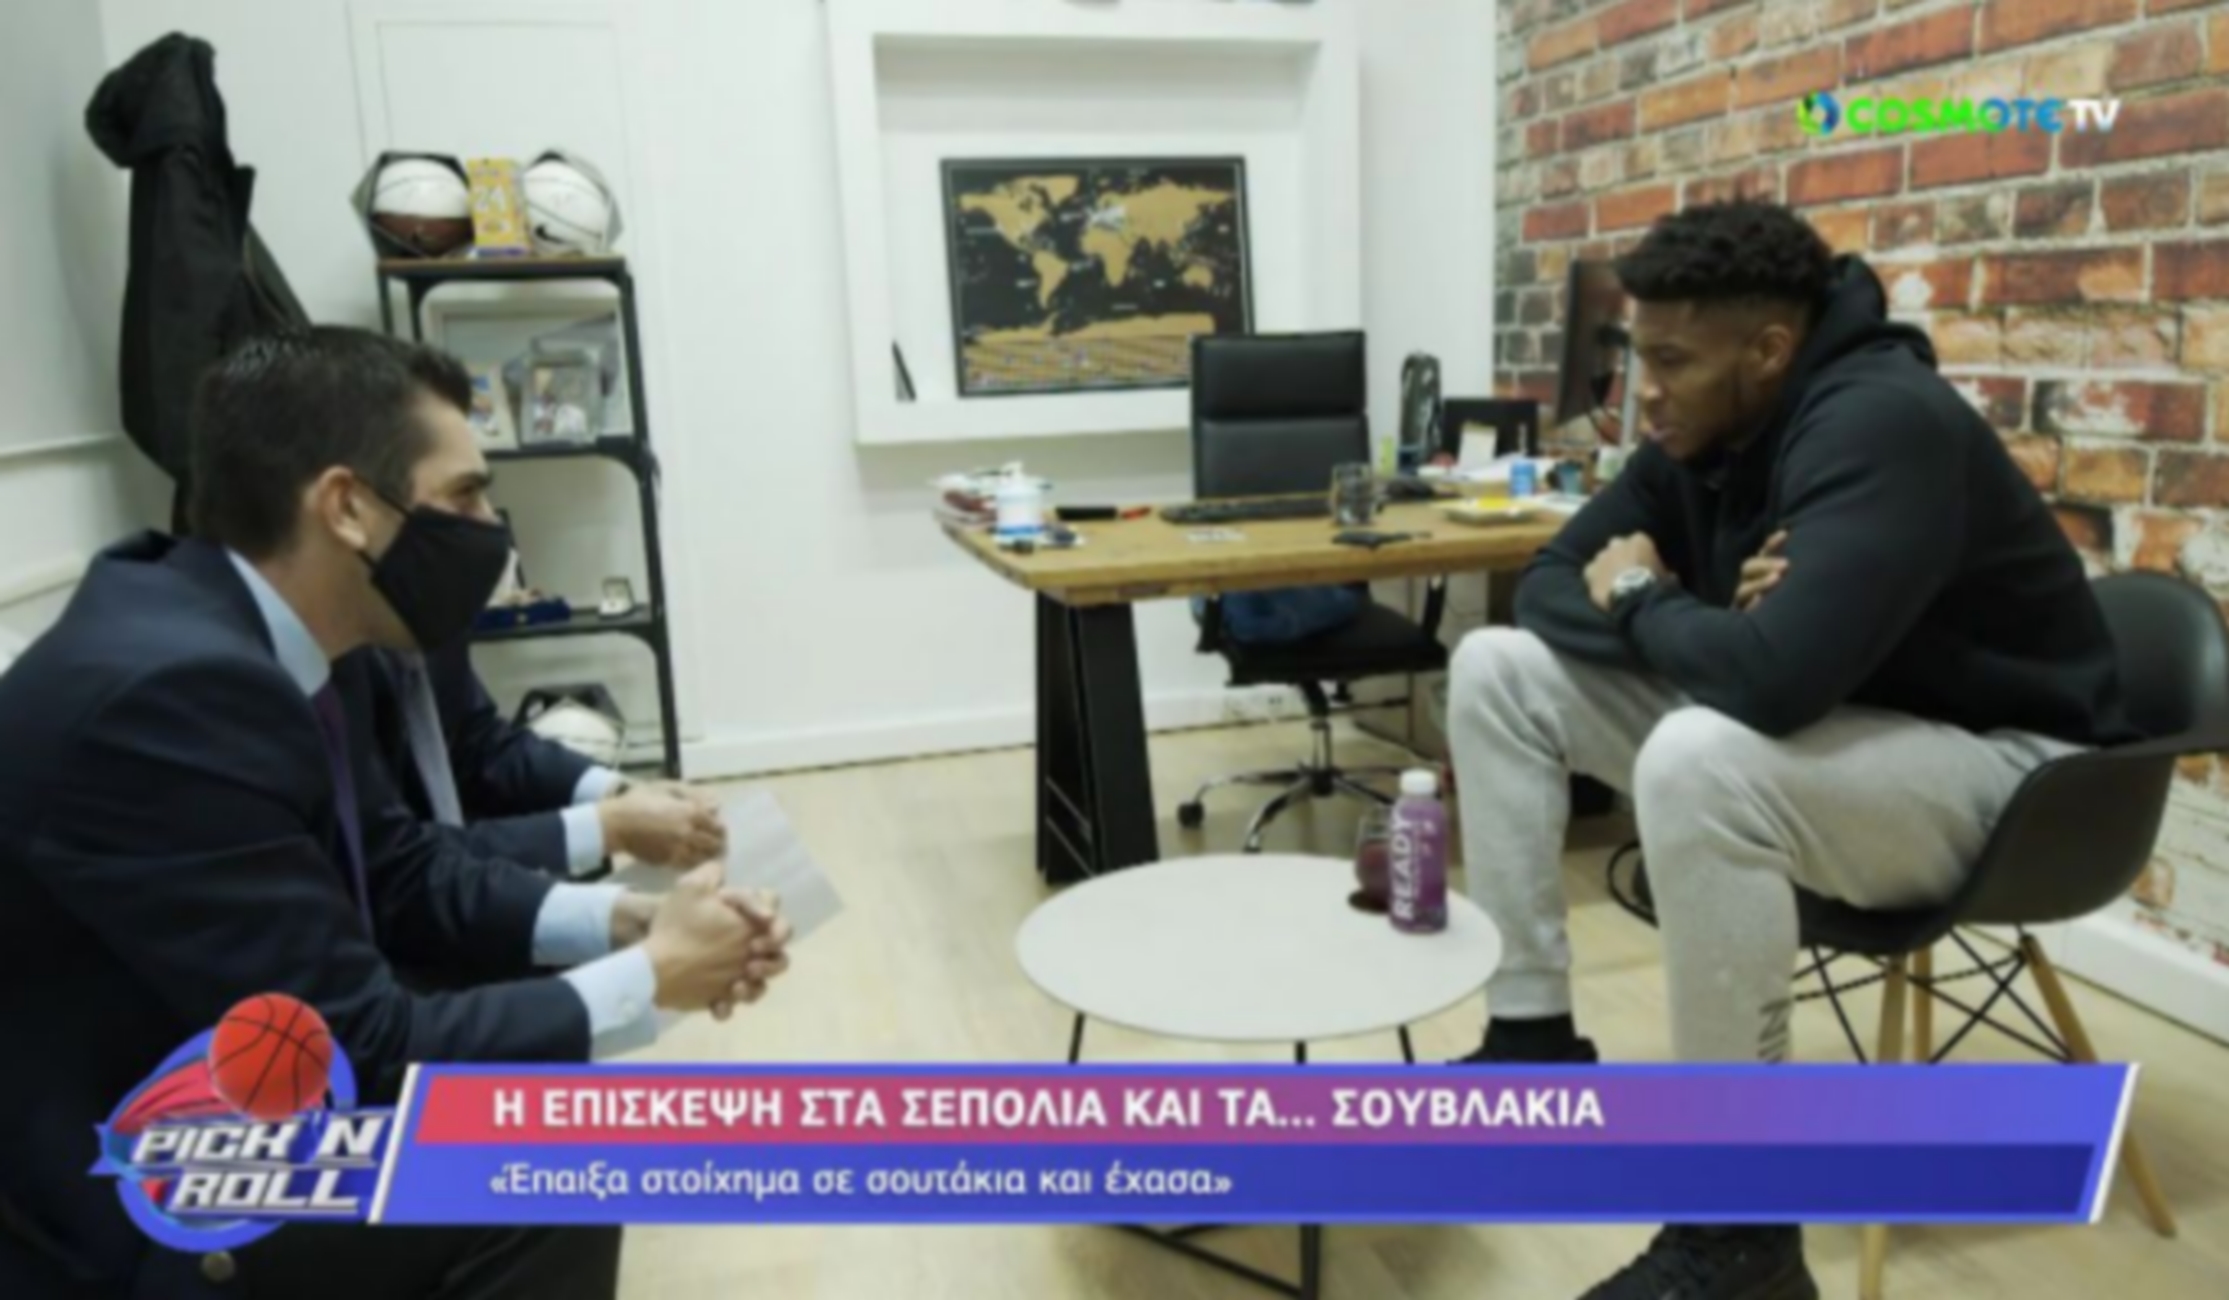 Αντετοκούνμπο: “Να παίζω στην Εθνική μέχρι τα 40 μου”! Τι είπε για Τσιτσιπά και το περιστατικό στα Σεπόλια (videos)